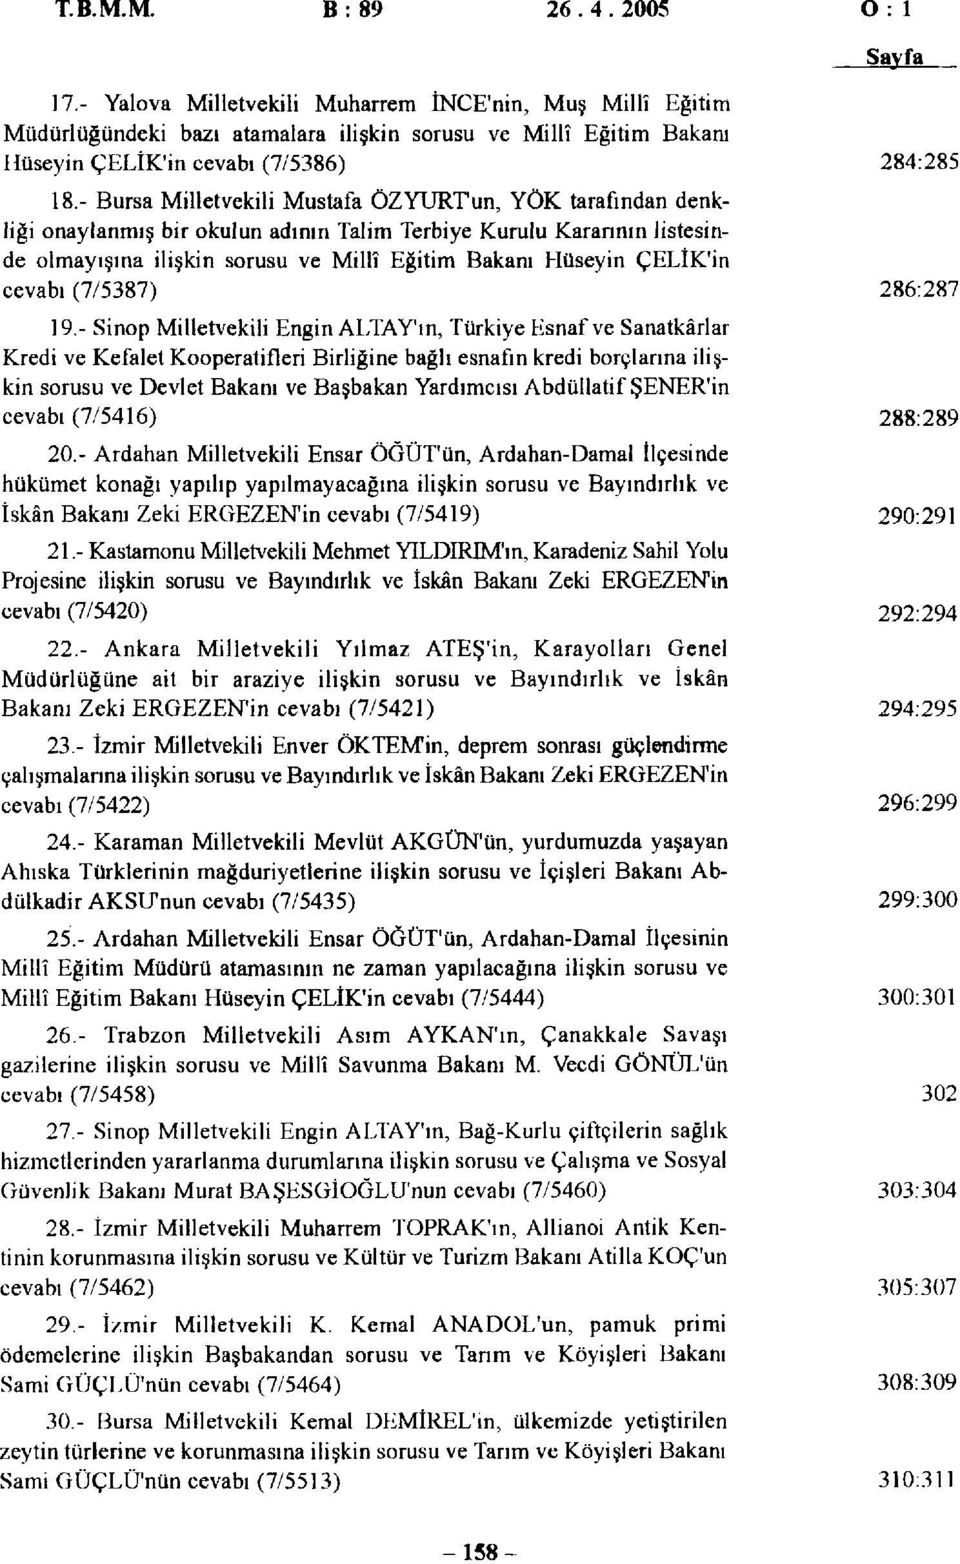 - Bursa Milletvekili Mustafa ÖZYURTun, YÖK tarafından denkliği onaylanmış bir okulun adının Talim Terbiye Kurulu Kararının listesinde olmayışına ilişkin sorusu ve Millî Eğitim Bakanı Hüseyin ÇELİK'in